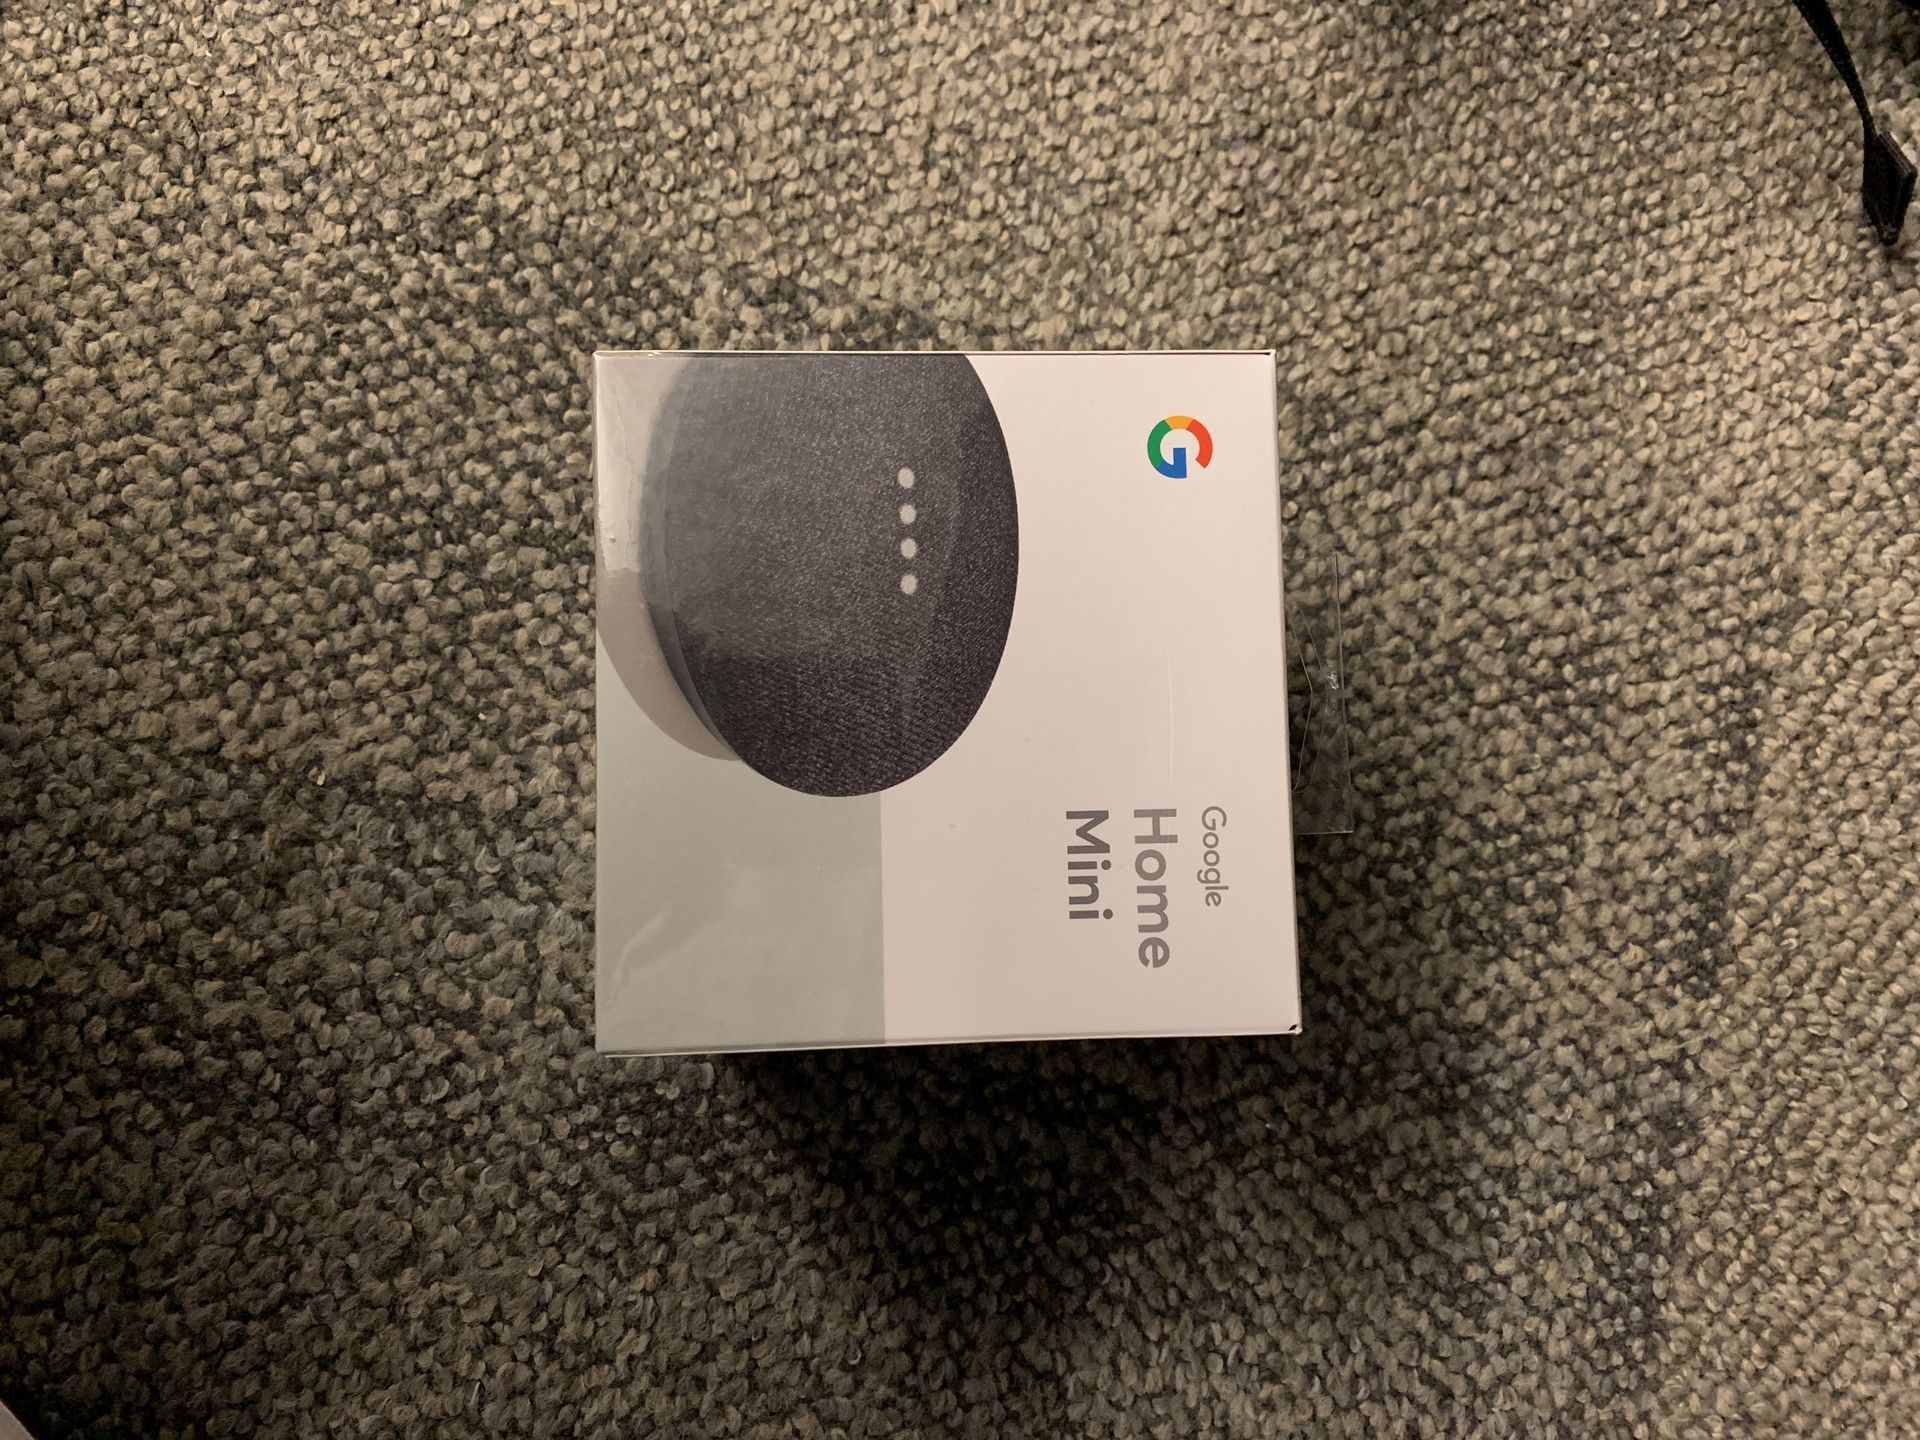 Google Home Mini (charcoal) - brand new